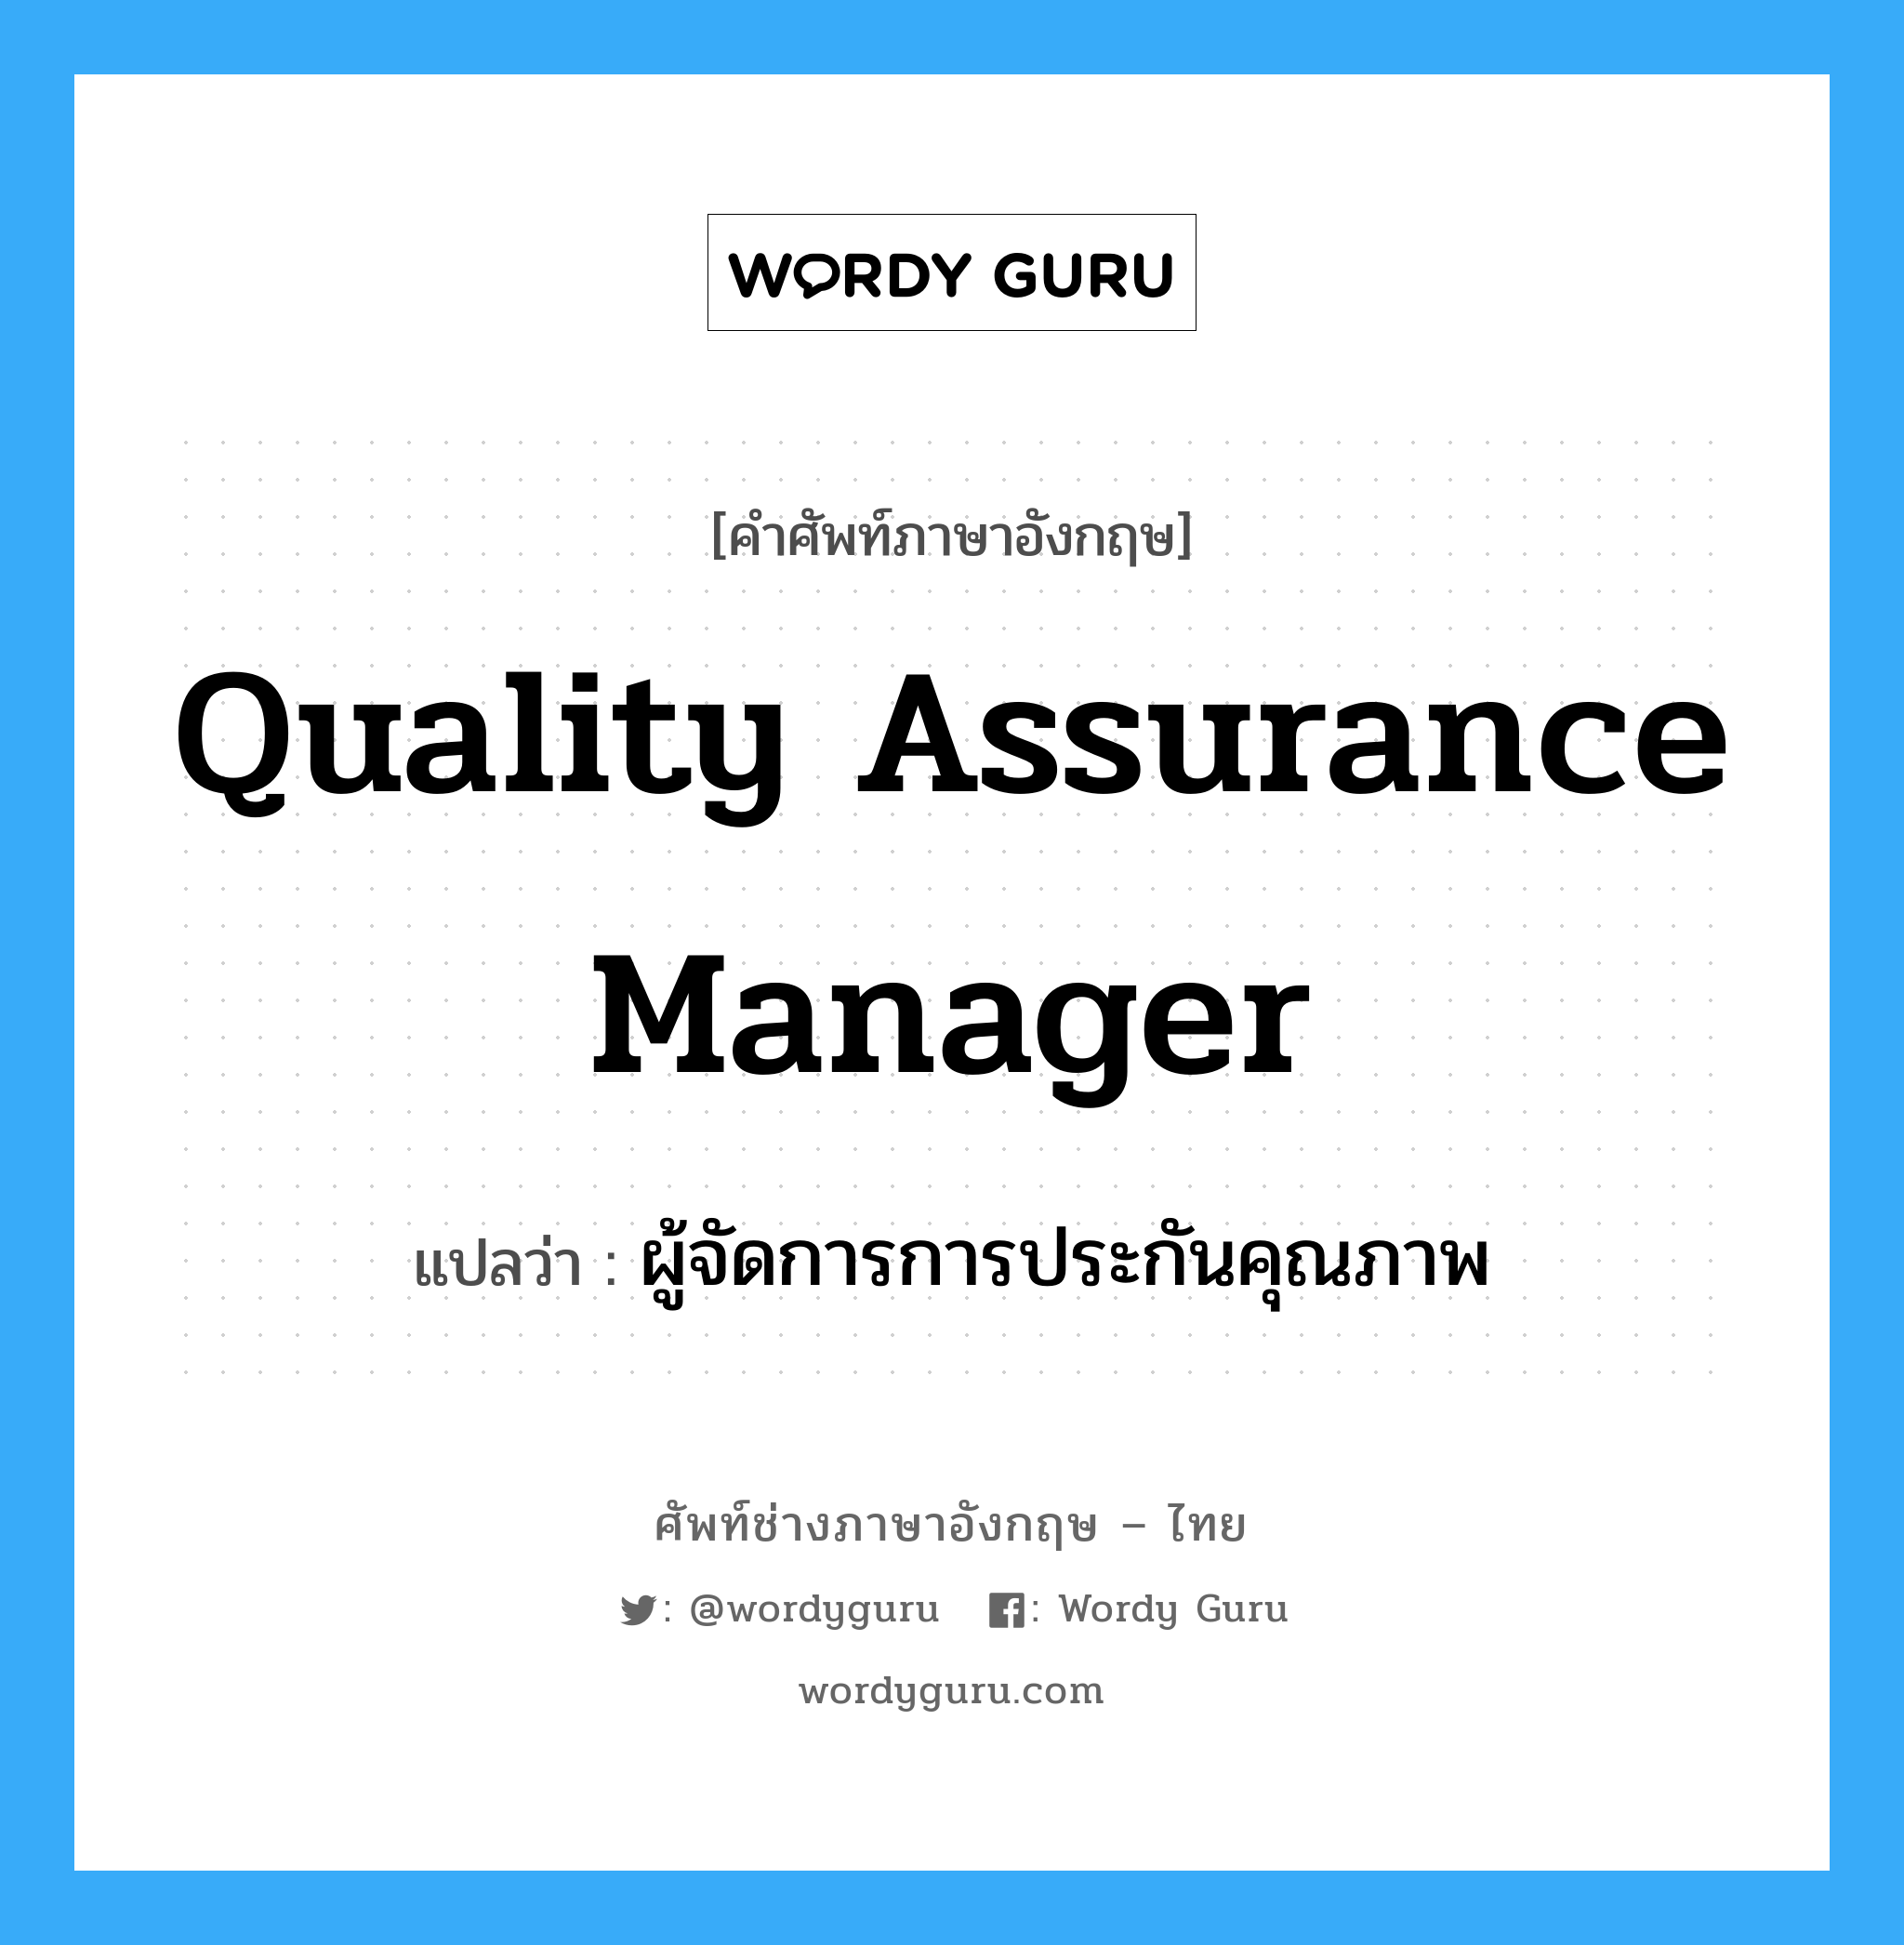 ผู้จัดการการประกันคุณภาพ ภาษาอังกฤษ?, คำศัพท์ช่างภาษาอังกฤษ - ไทย ผู้จัดการการประกันคุณภาพ คำศัพท์ภาษาอังกฤษ ผู้จัดการการประกันคุณภาพ แปลว่า Quality Assurance Manager